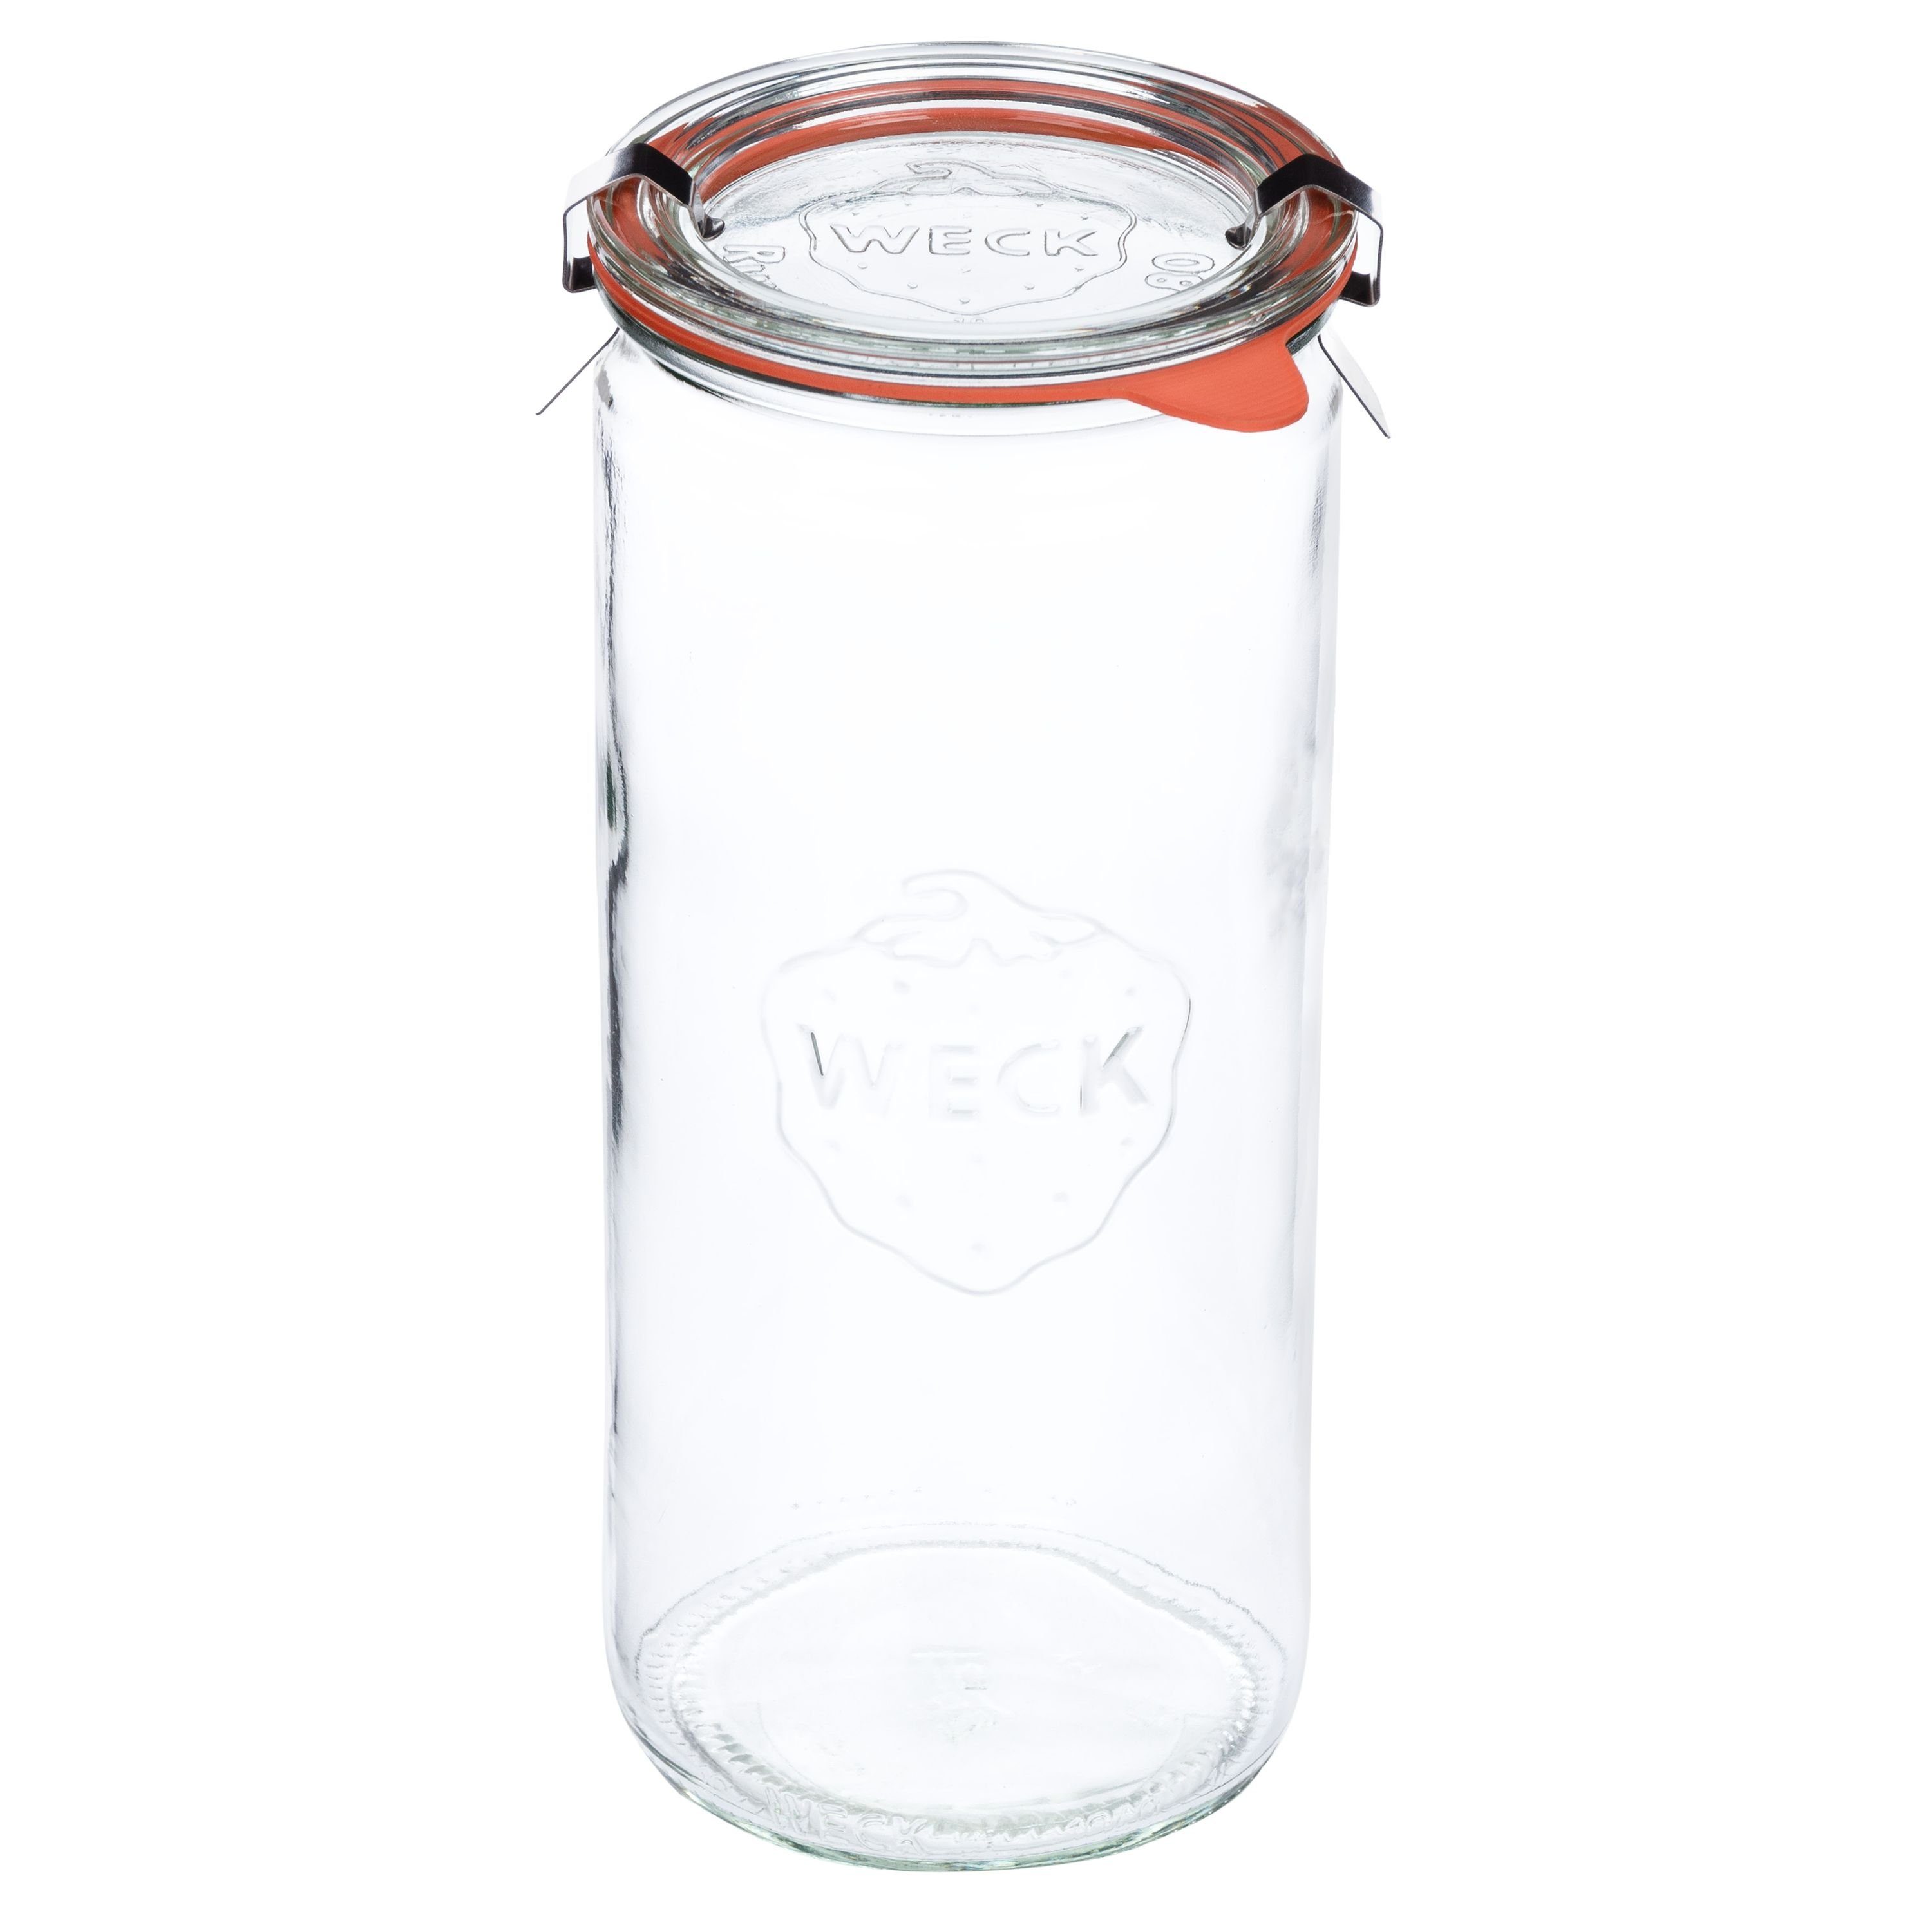 MamboCat Einmachglas 8er Zylinderglas Einkochringe Klammer, + Glas Gläser Weck 1040ml Deckel Set